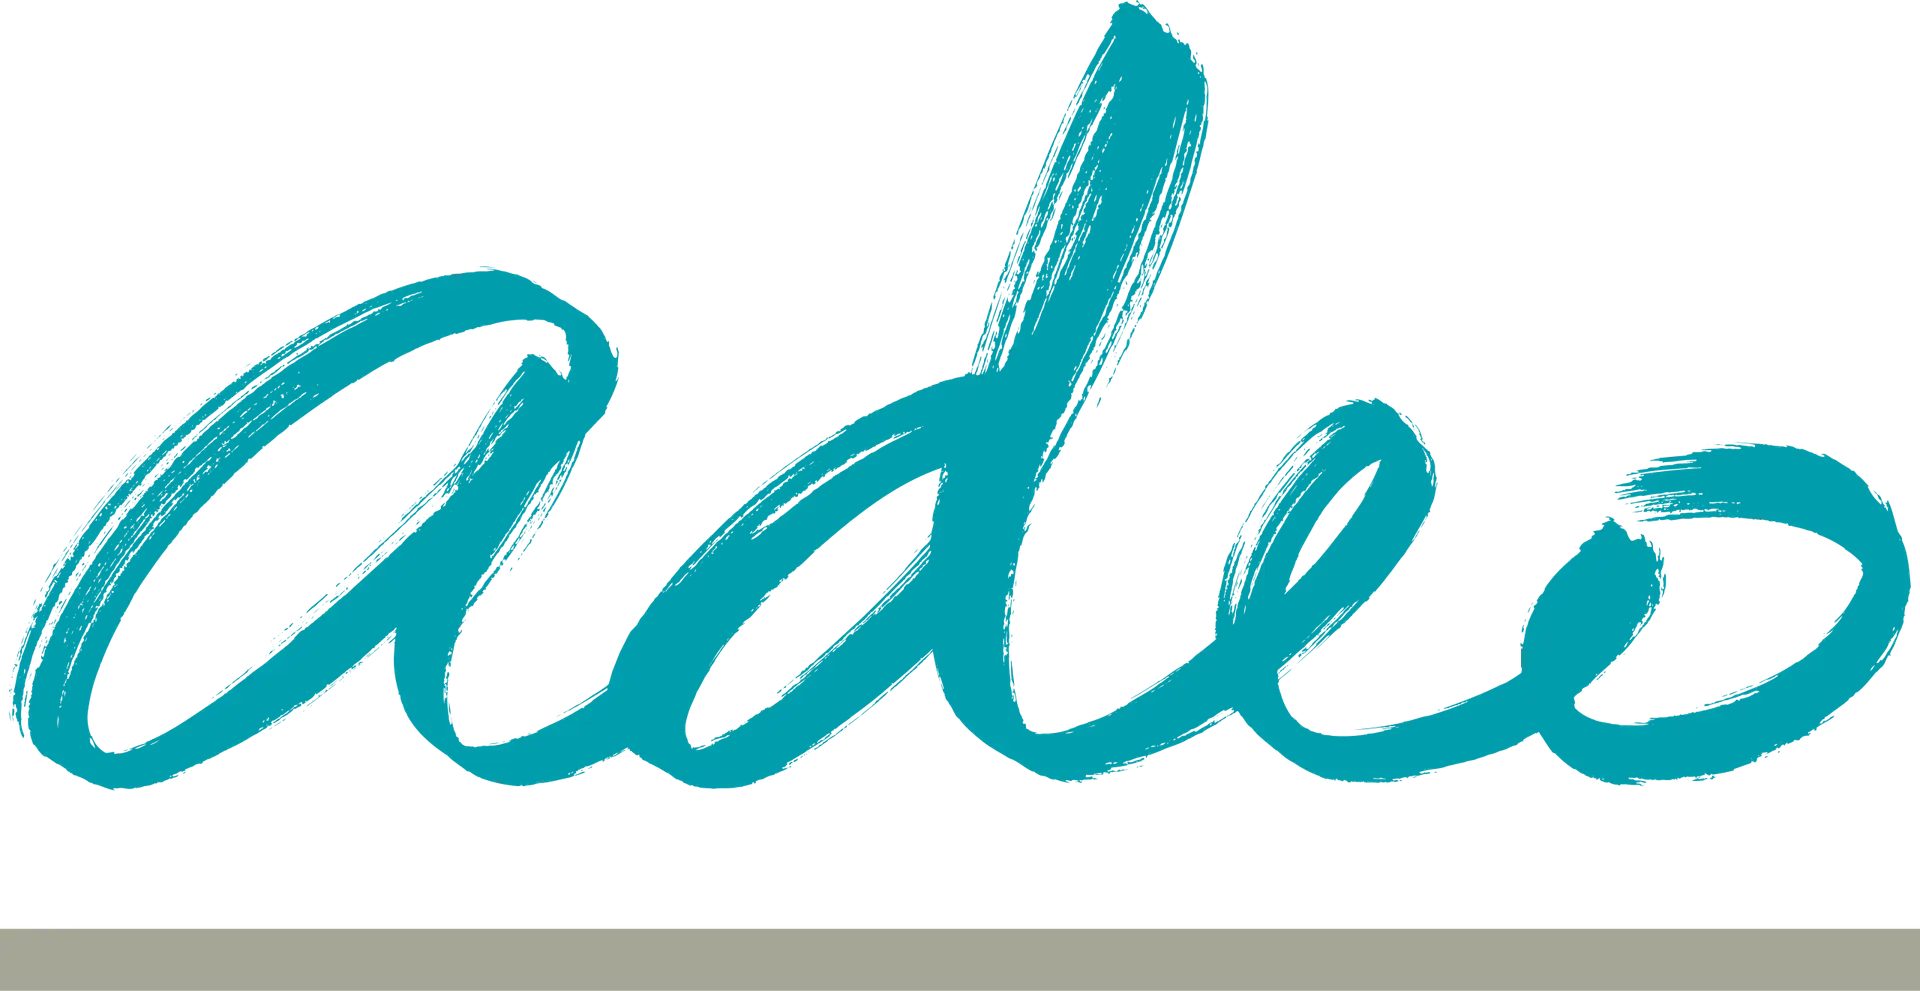 Logo d'Adeo avec le nom "Adeo" écrit en lettres cursives bleues, donnant une impression de mouvement et de dynamisme.